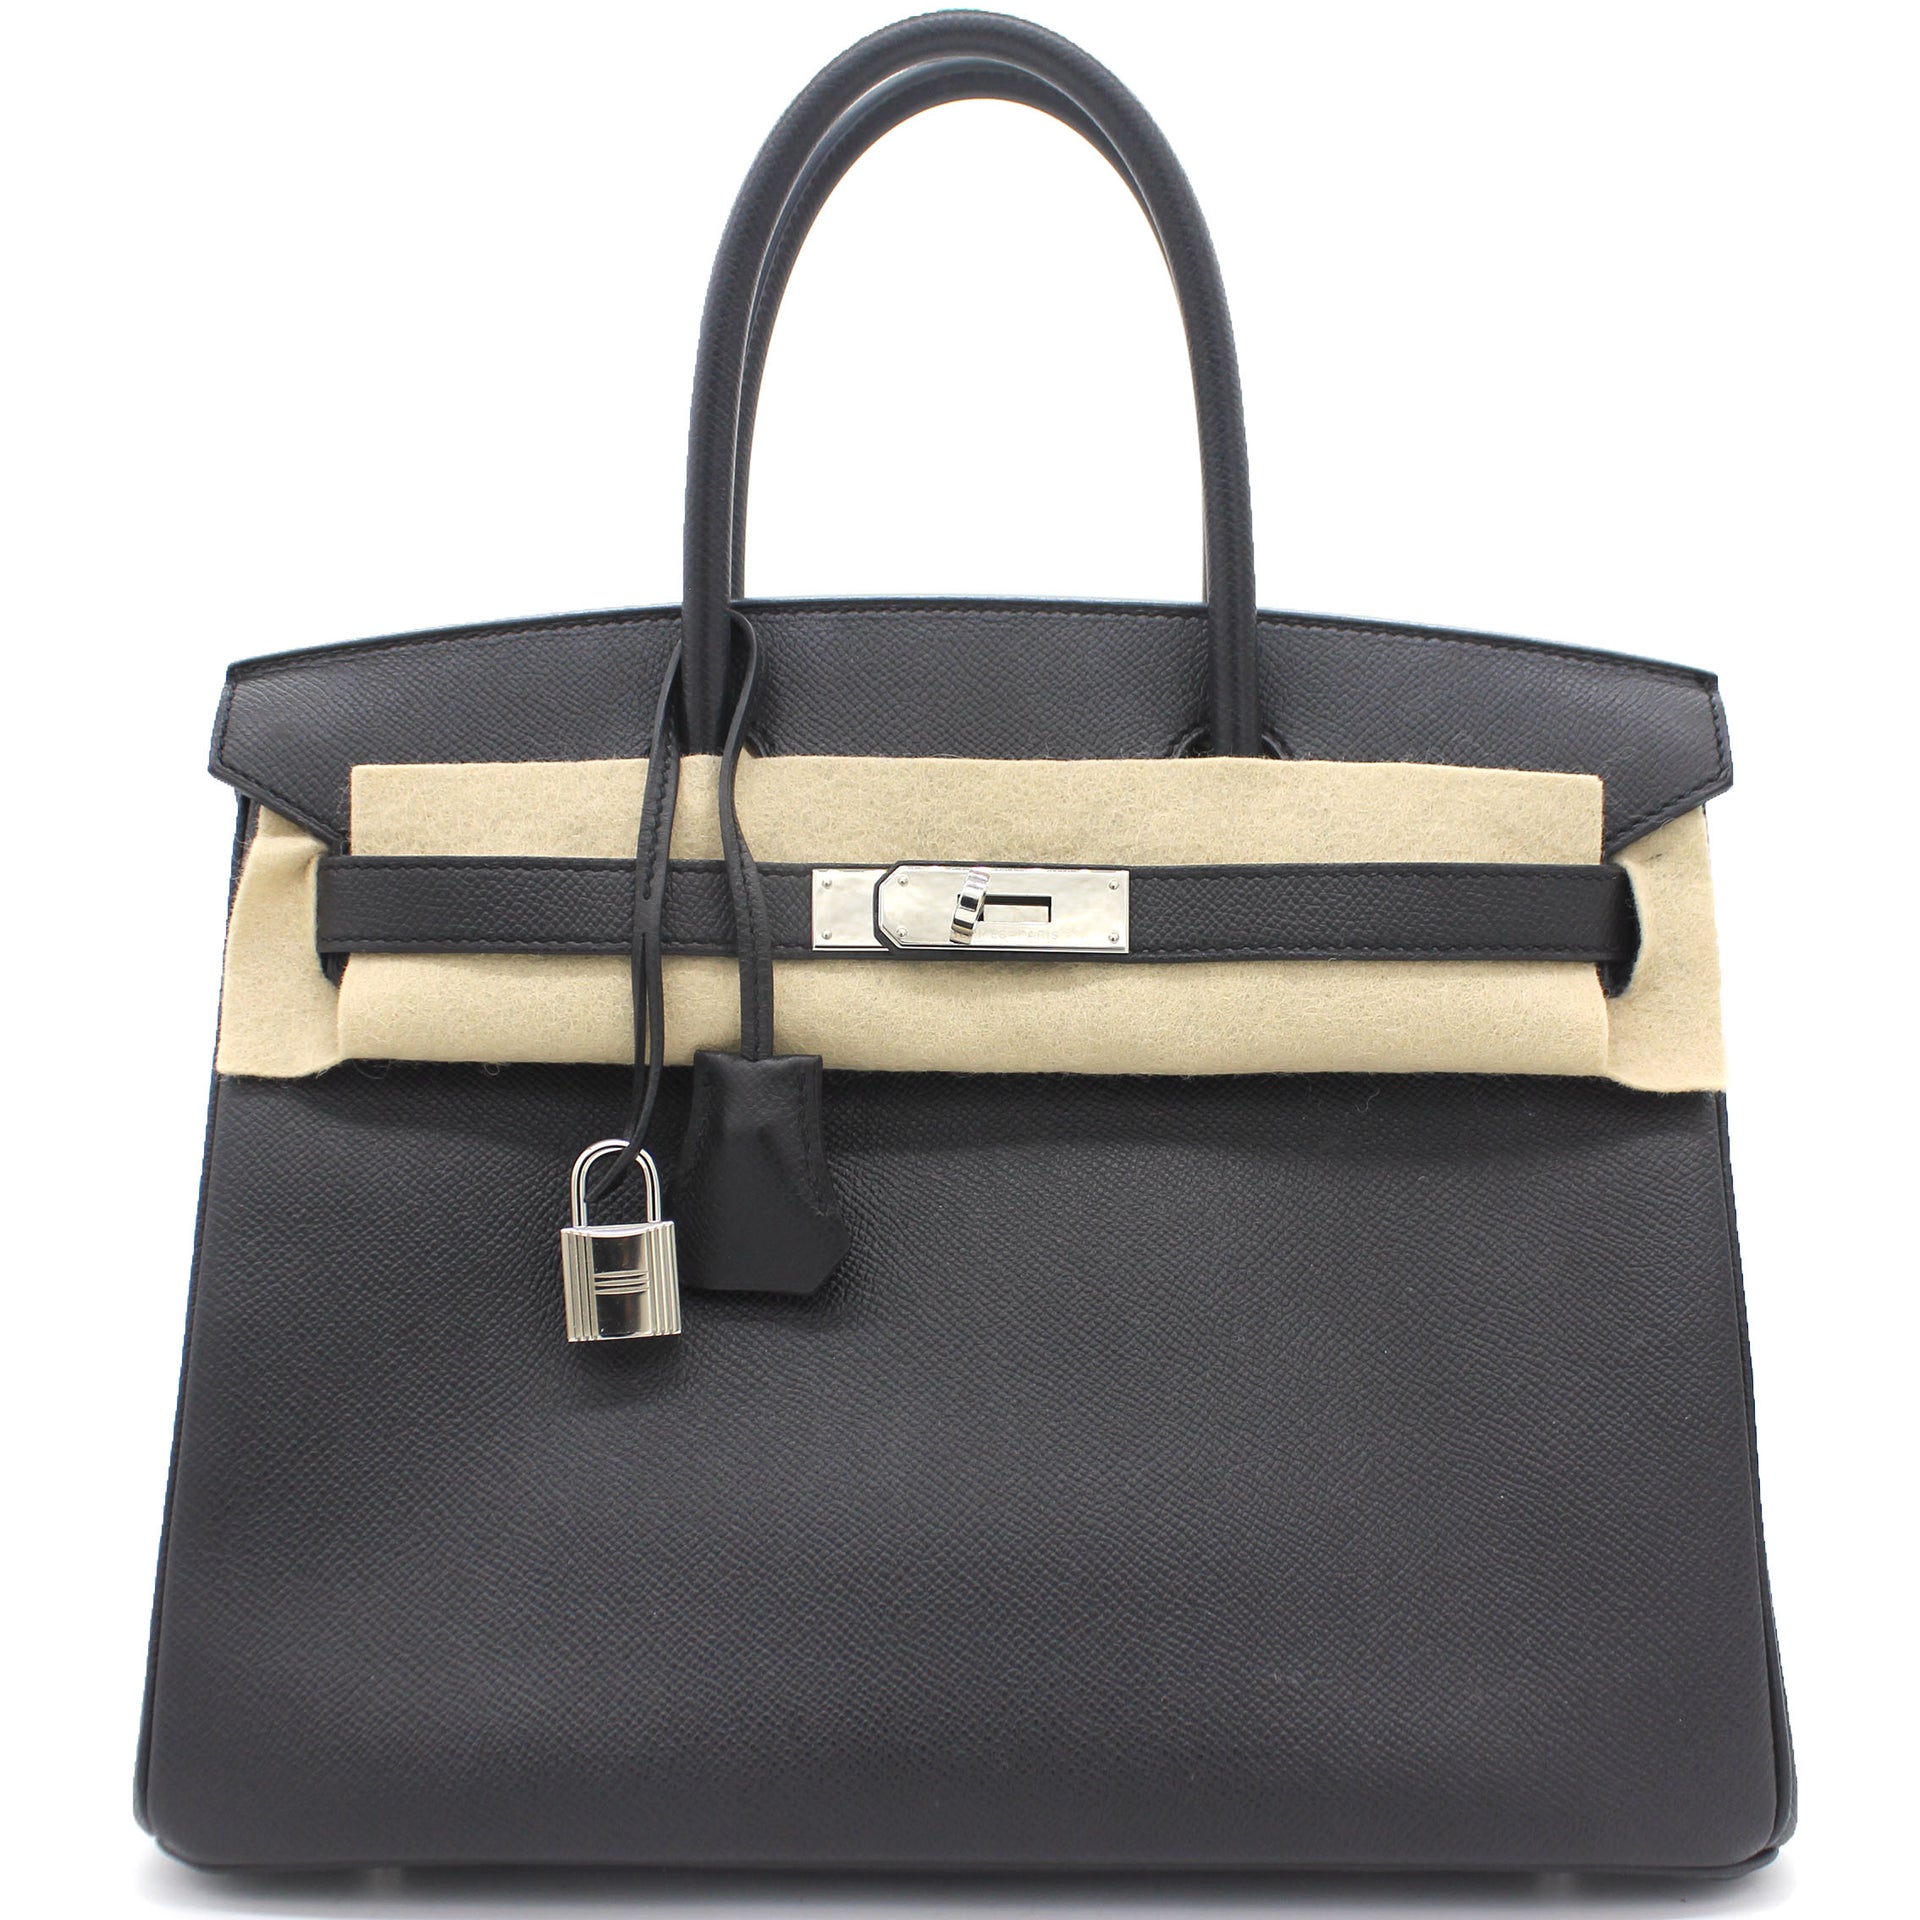 Epsom Leather Birkin 30 Bag Noir